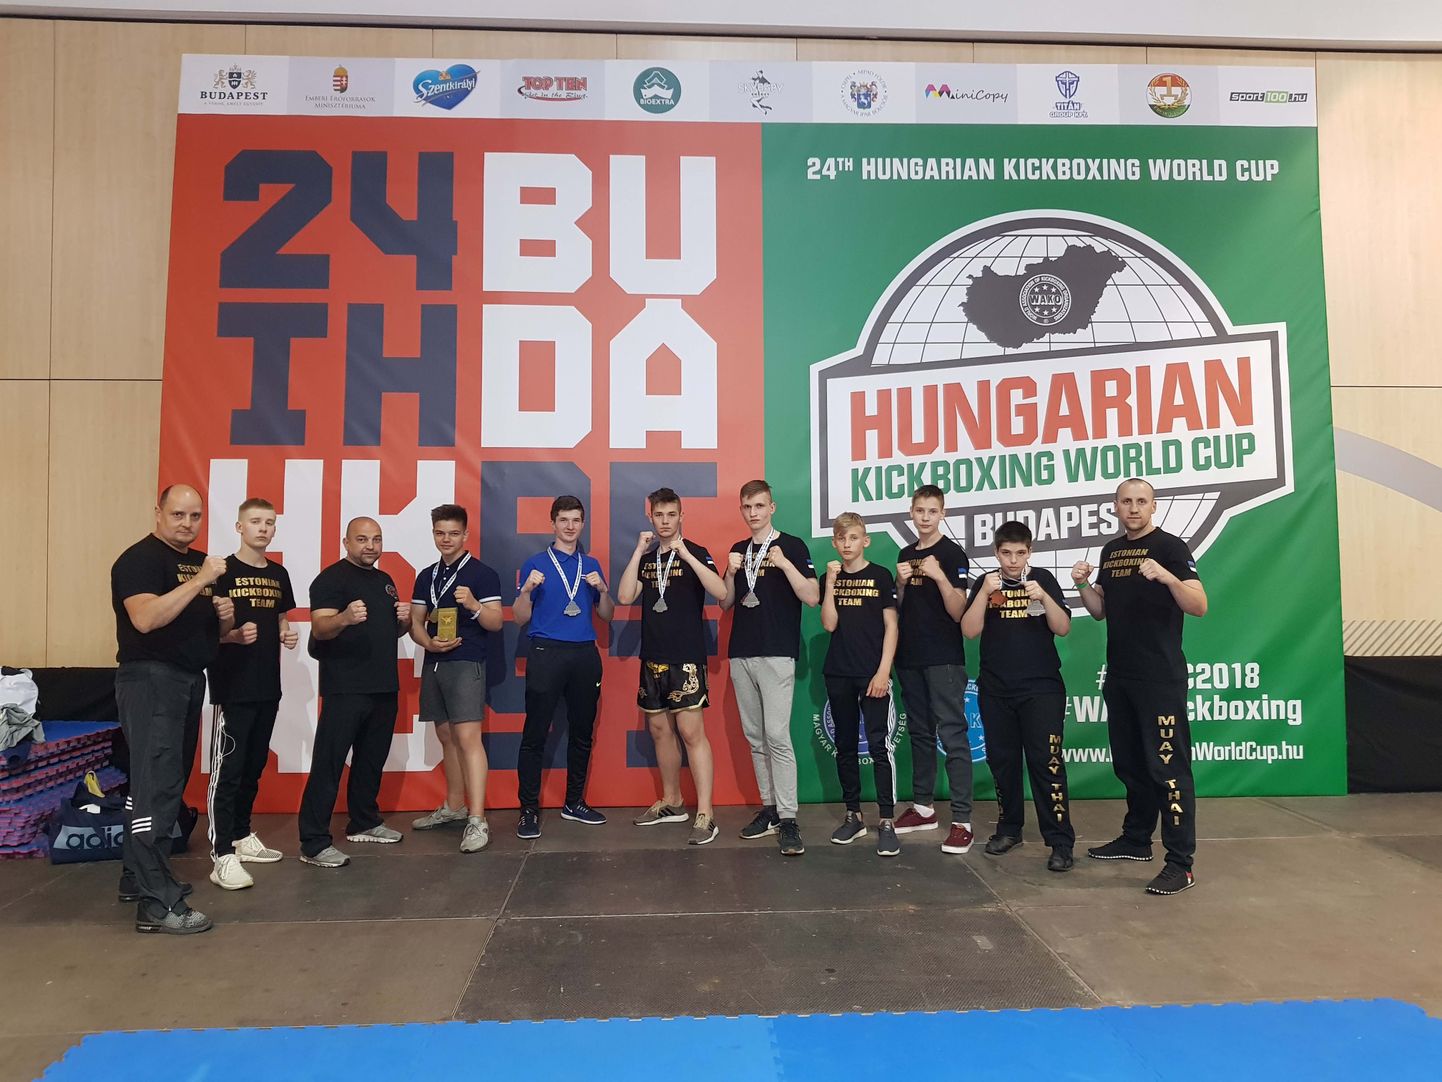 Эстонские спортсмены на Кубке мира по кикбоксингу в Венгрии